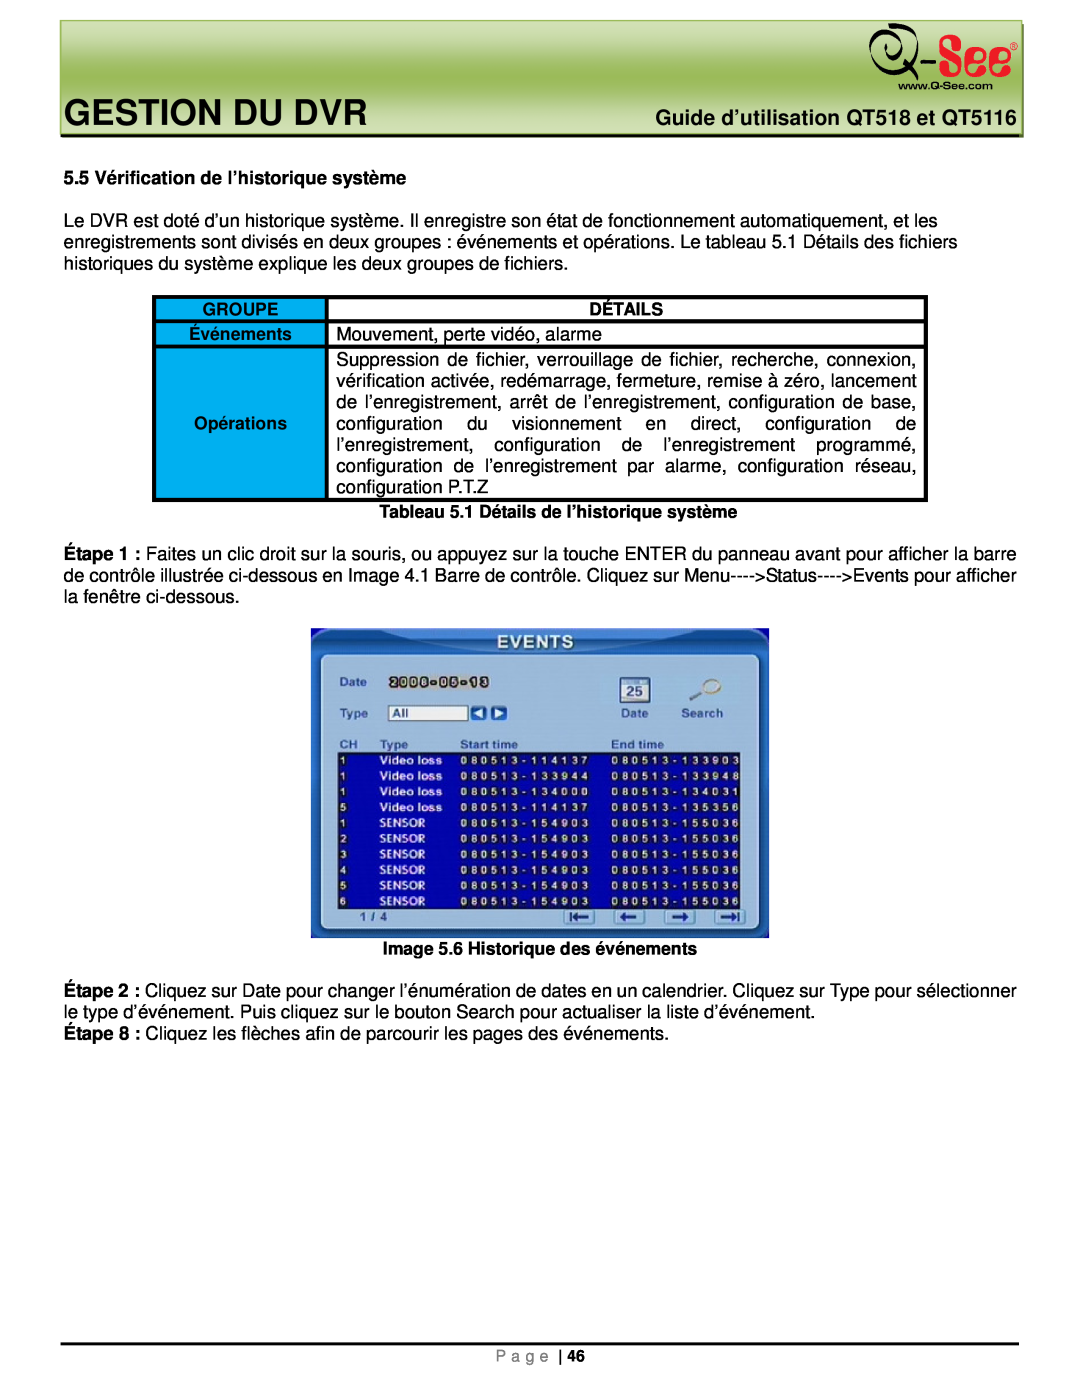 Q-See manual Gestion Du Dvr, Guide d’utilisation QT518 et QT5116, 5.5 Vérification de l’historique système 